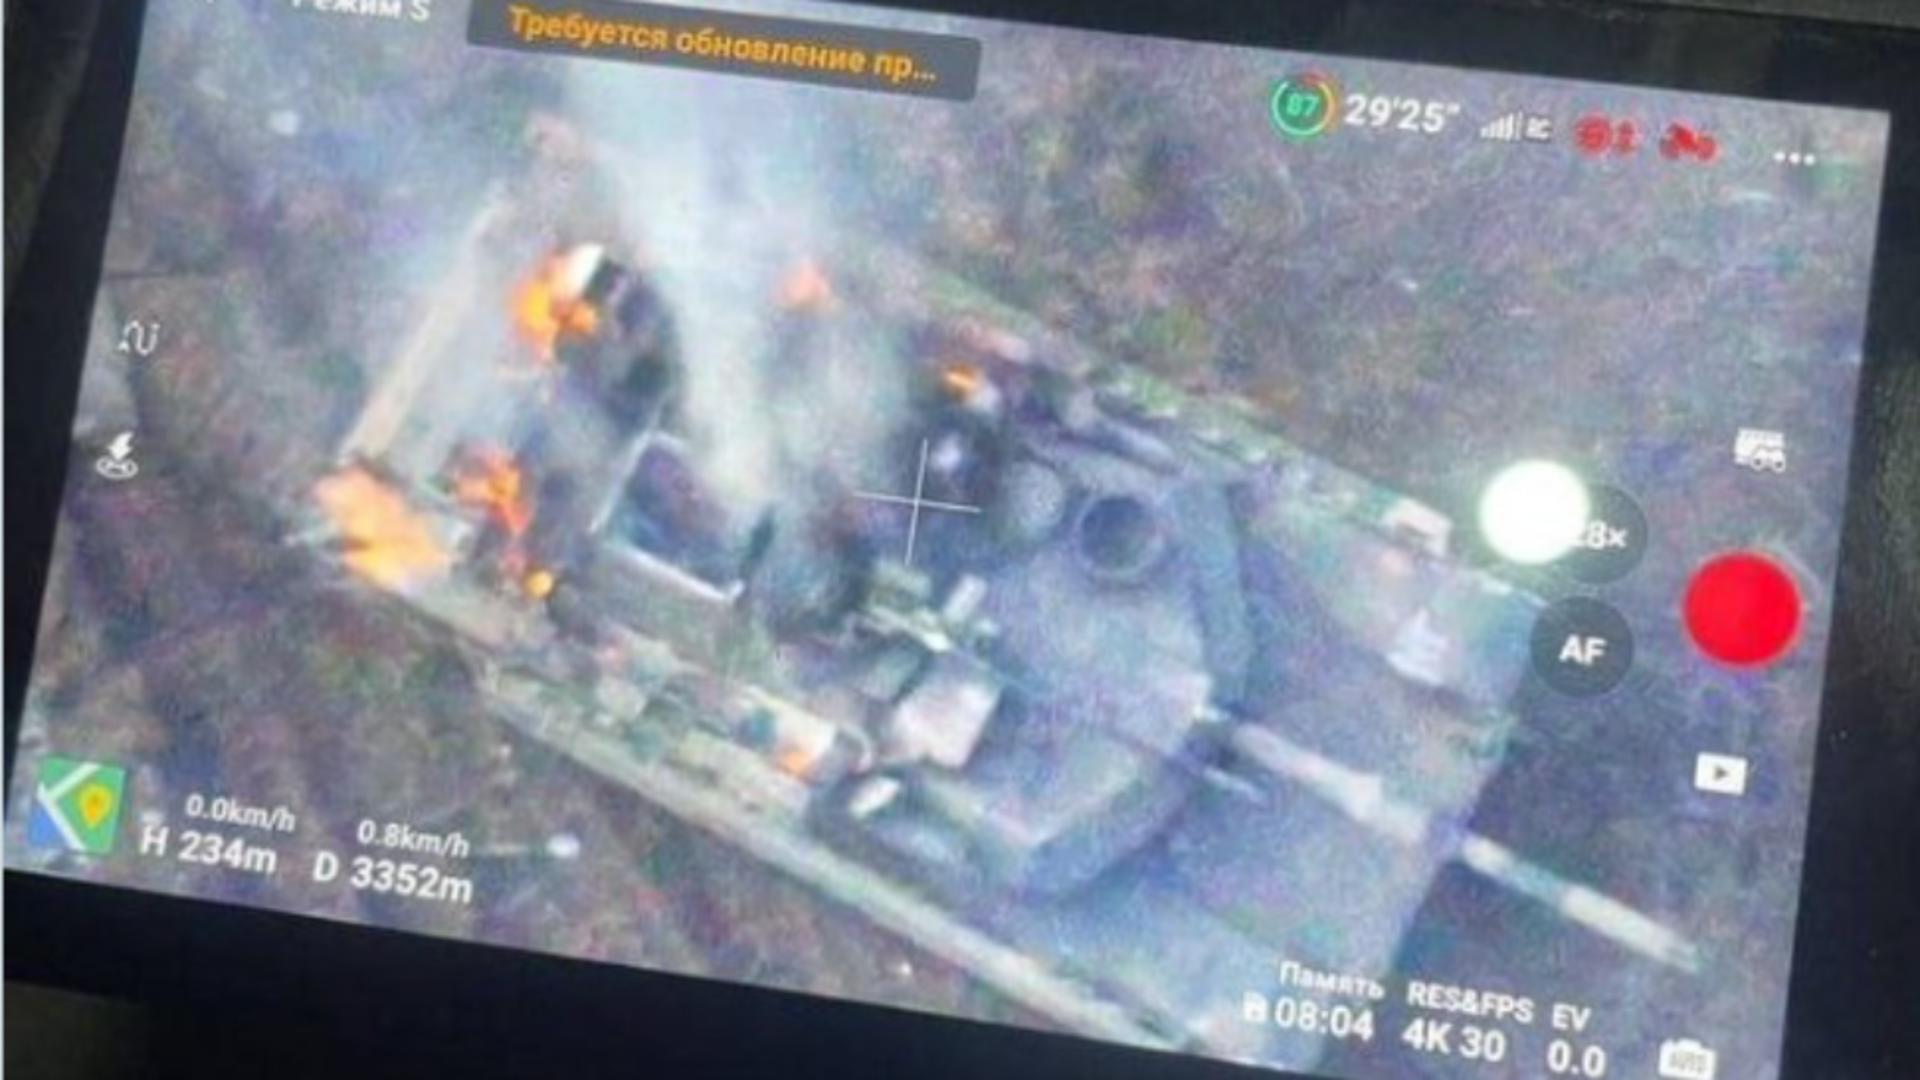 Imaginile cu tancul american distrus, distribuite pe rețelele sociale